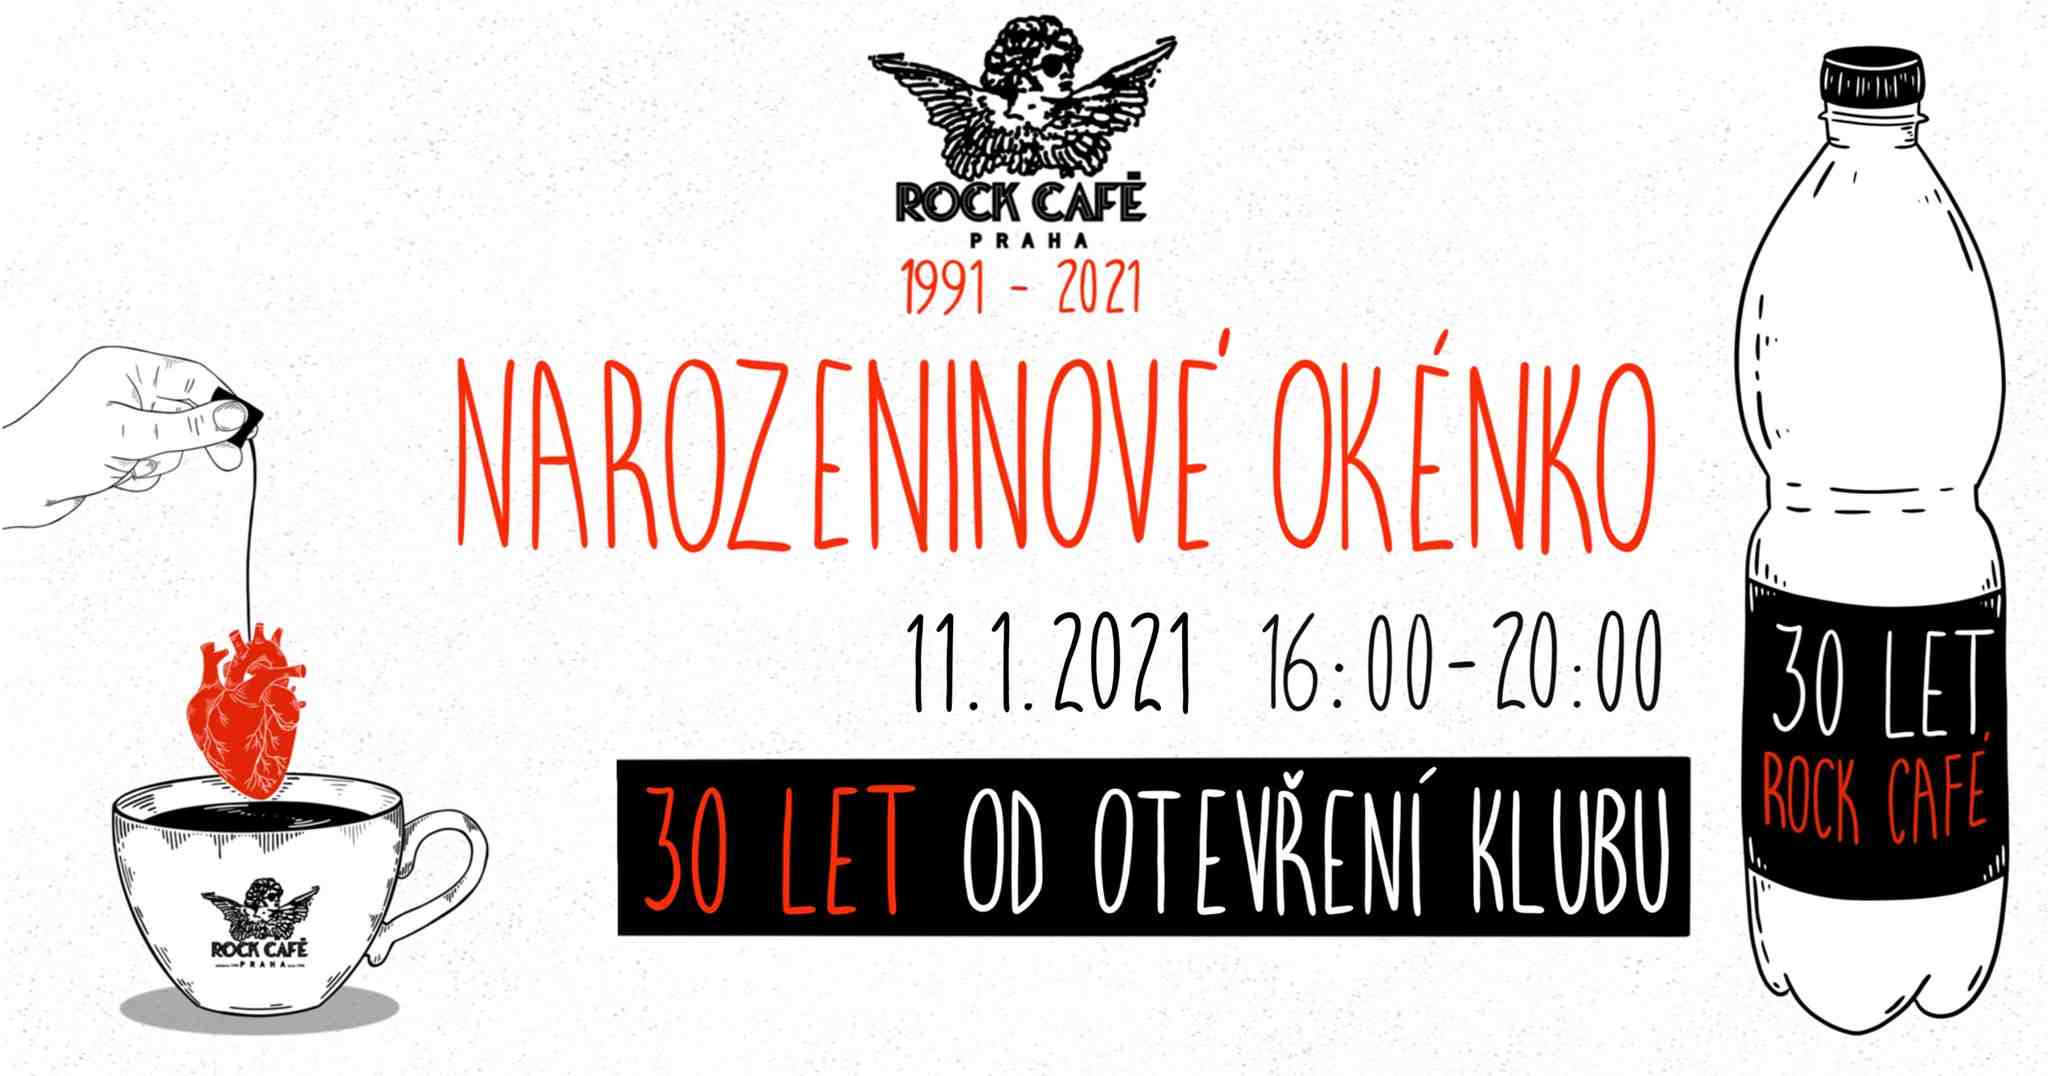 Rock Cafe Prague